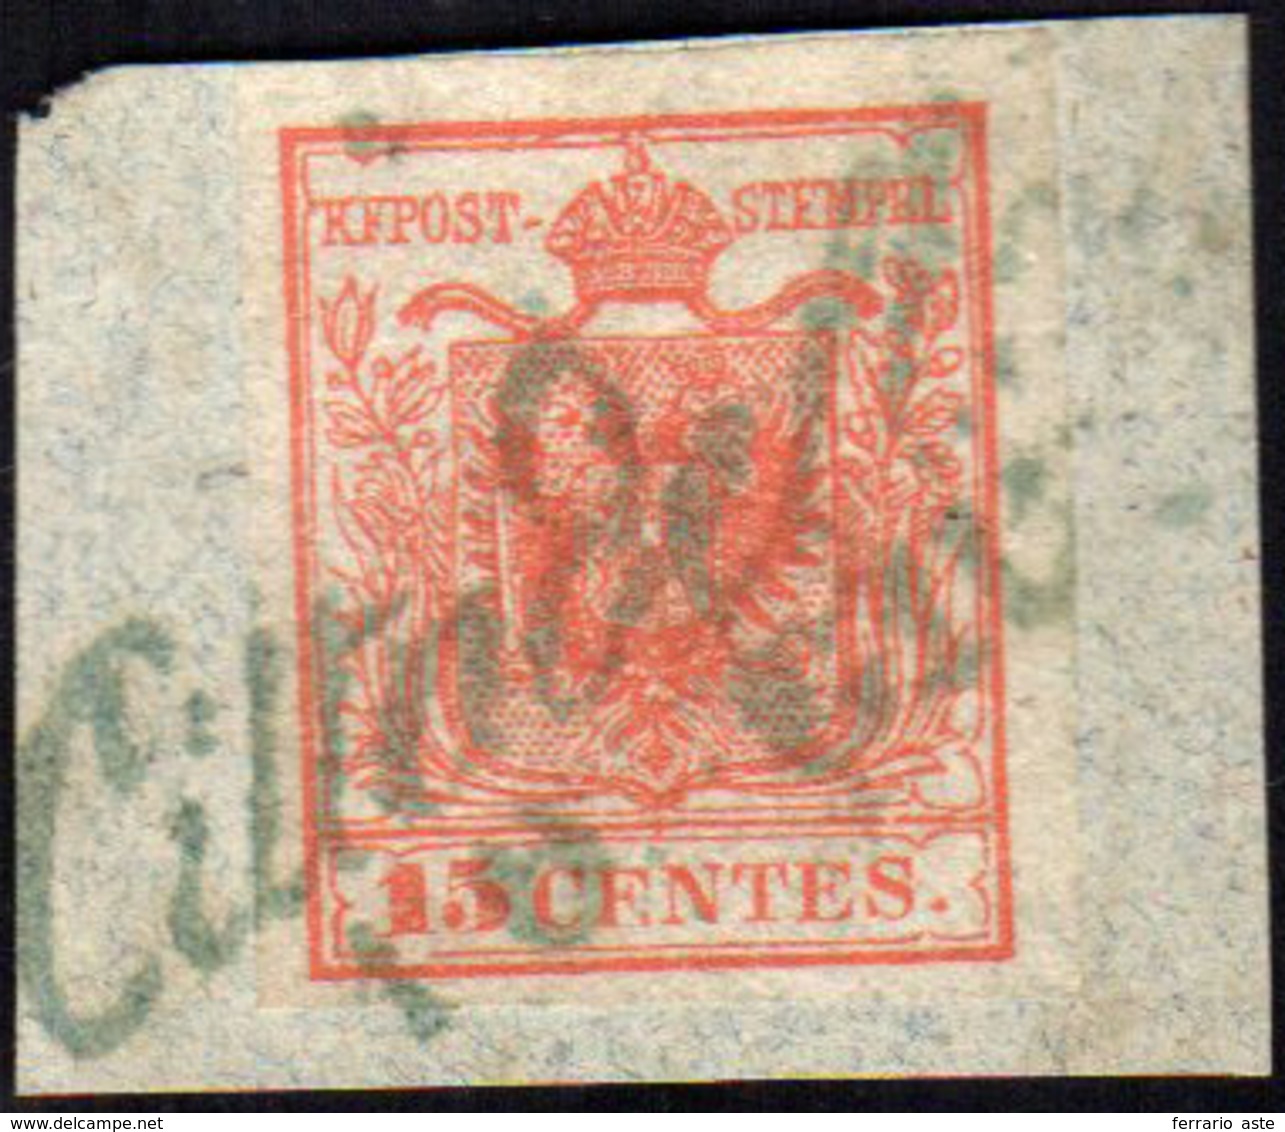 CITTADELLA, Cor. Azzurro Punti R1 - 15 Cent. (3), Perfetto, Usato Su Piccolo Frammento Il 10/6/1850.... - Lombardo-Vénétie